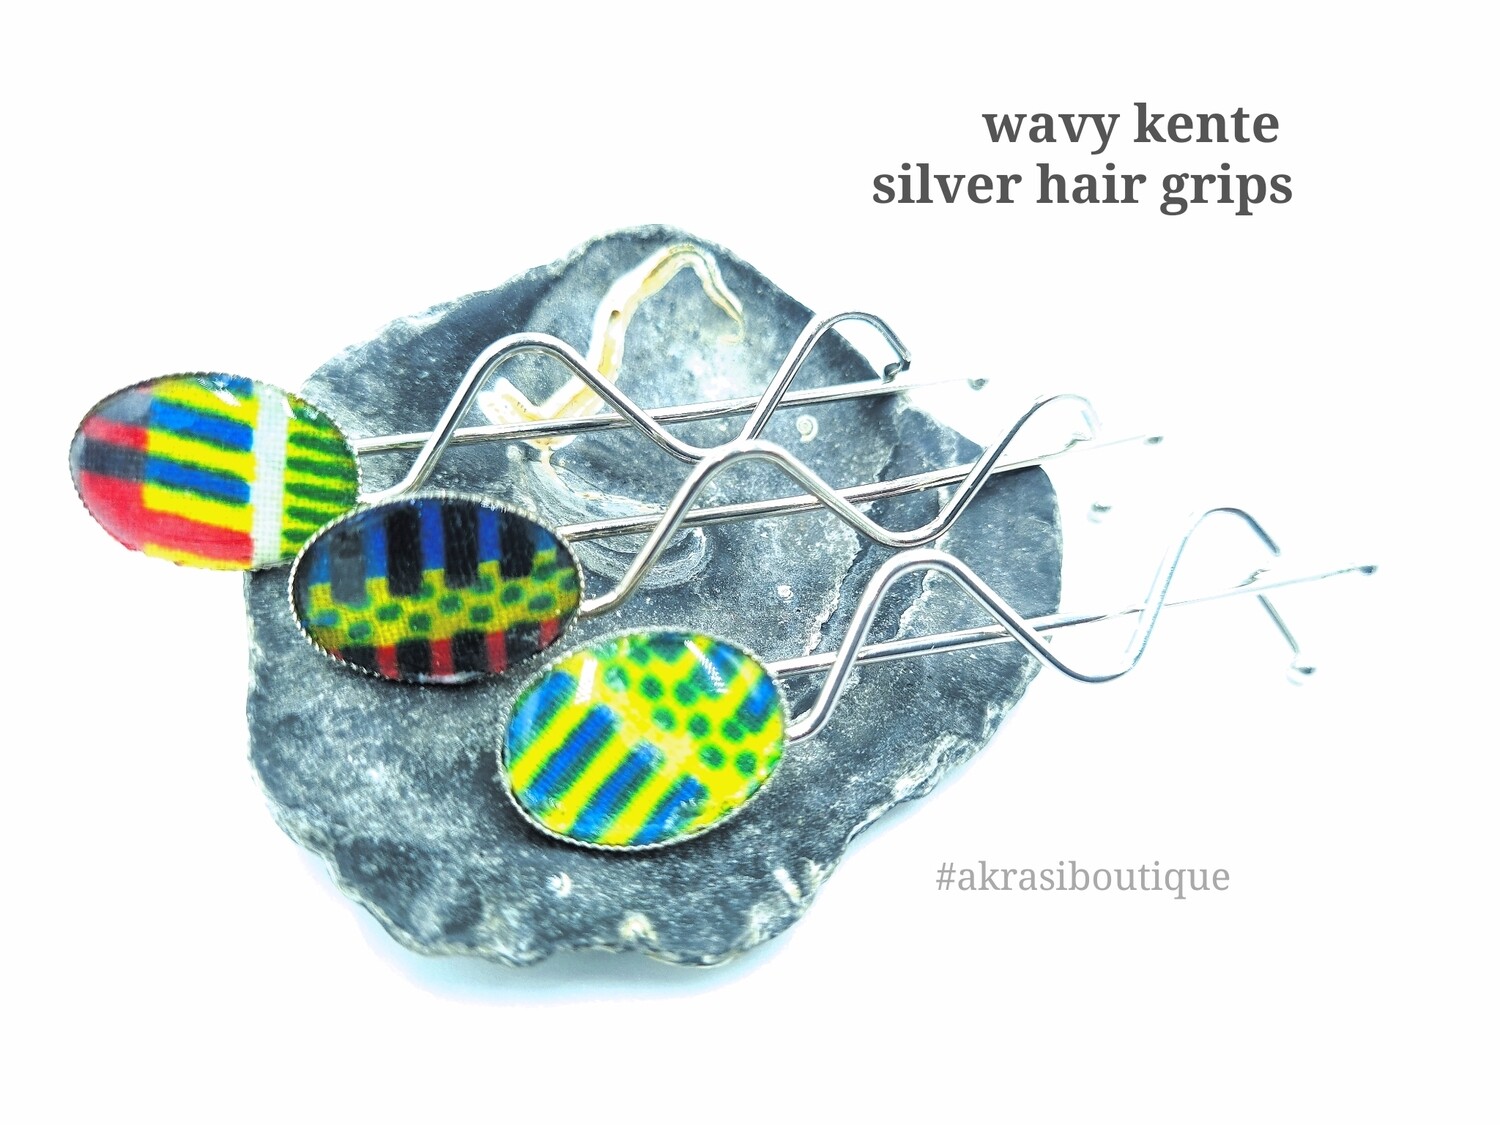 African wax kente detail wavy silver hair grip | hair slide | hair accessories